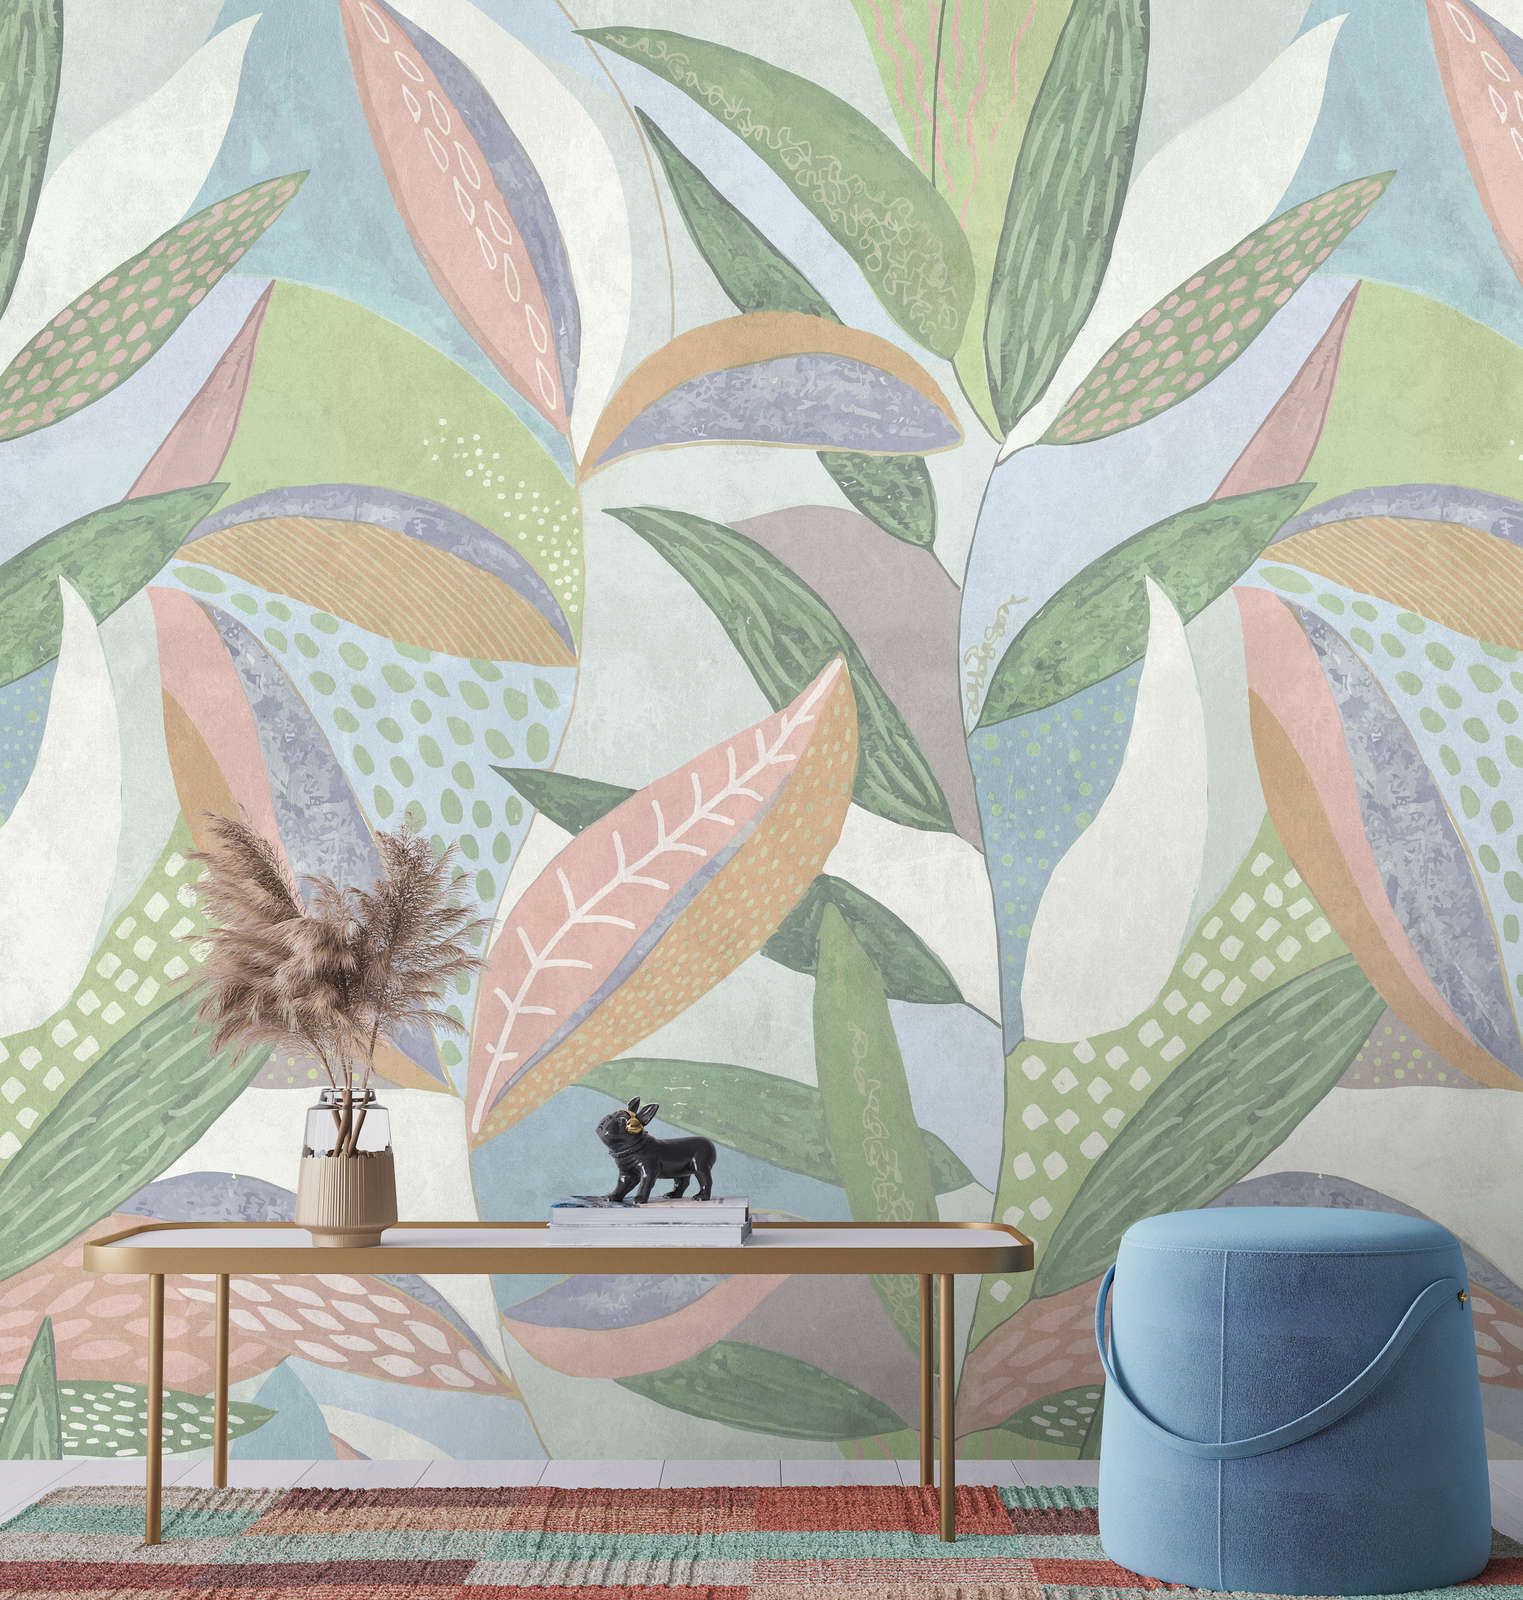             Digital behang »emilia« - Bont pastel bladpatroon voor betonnen pleisterstructuur - groen, blauw, roze | mat, glad vlies
        